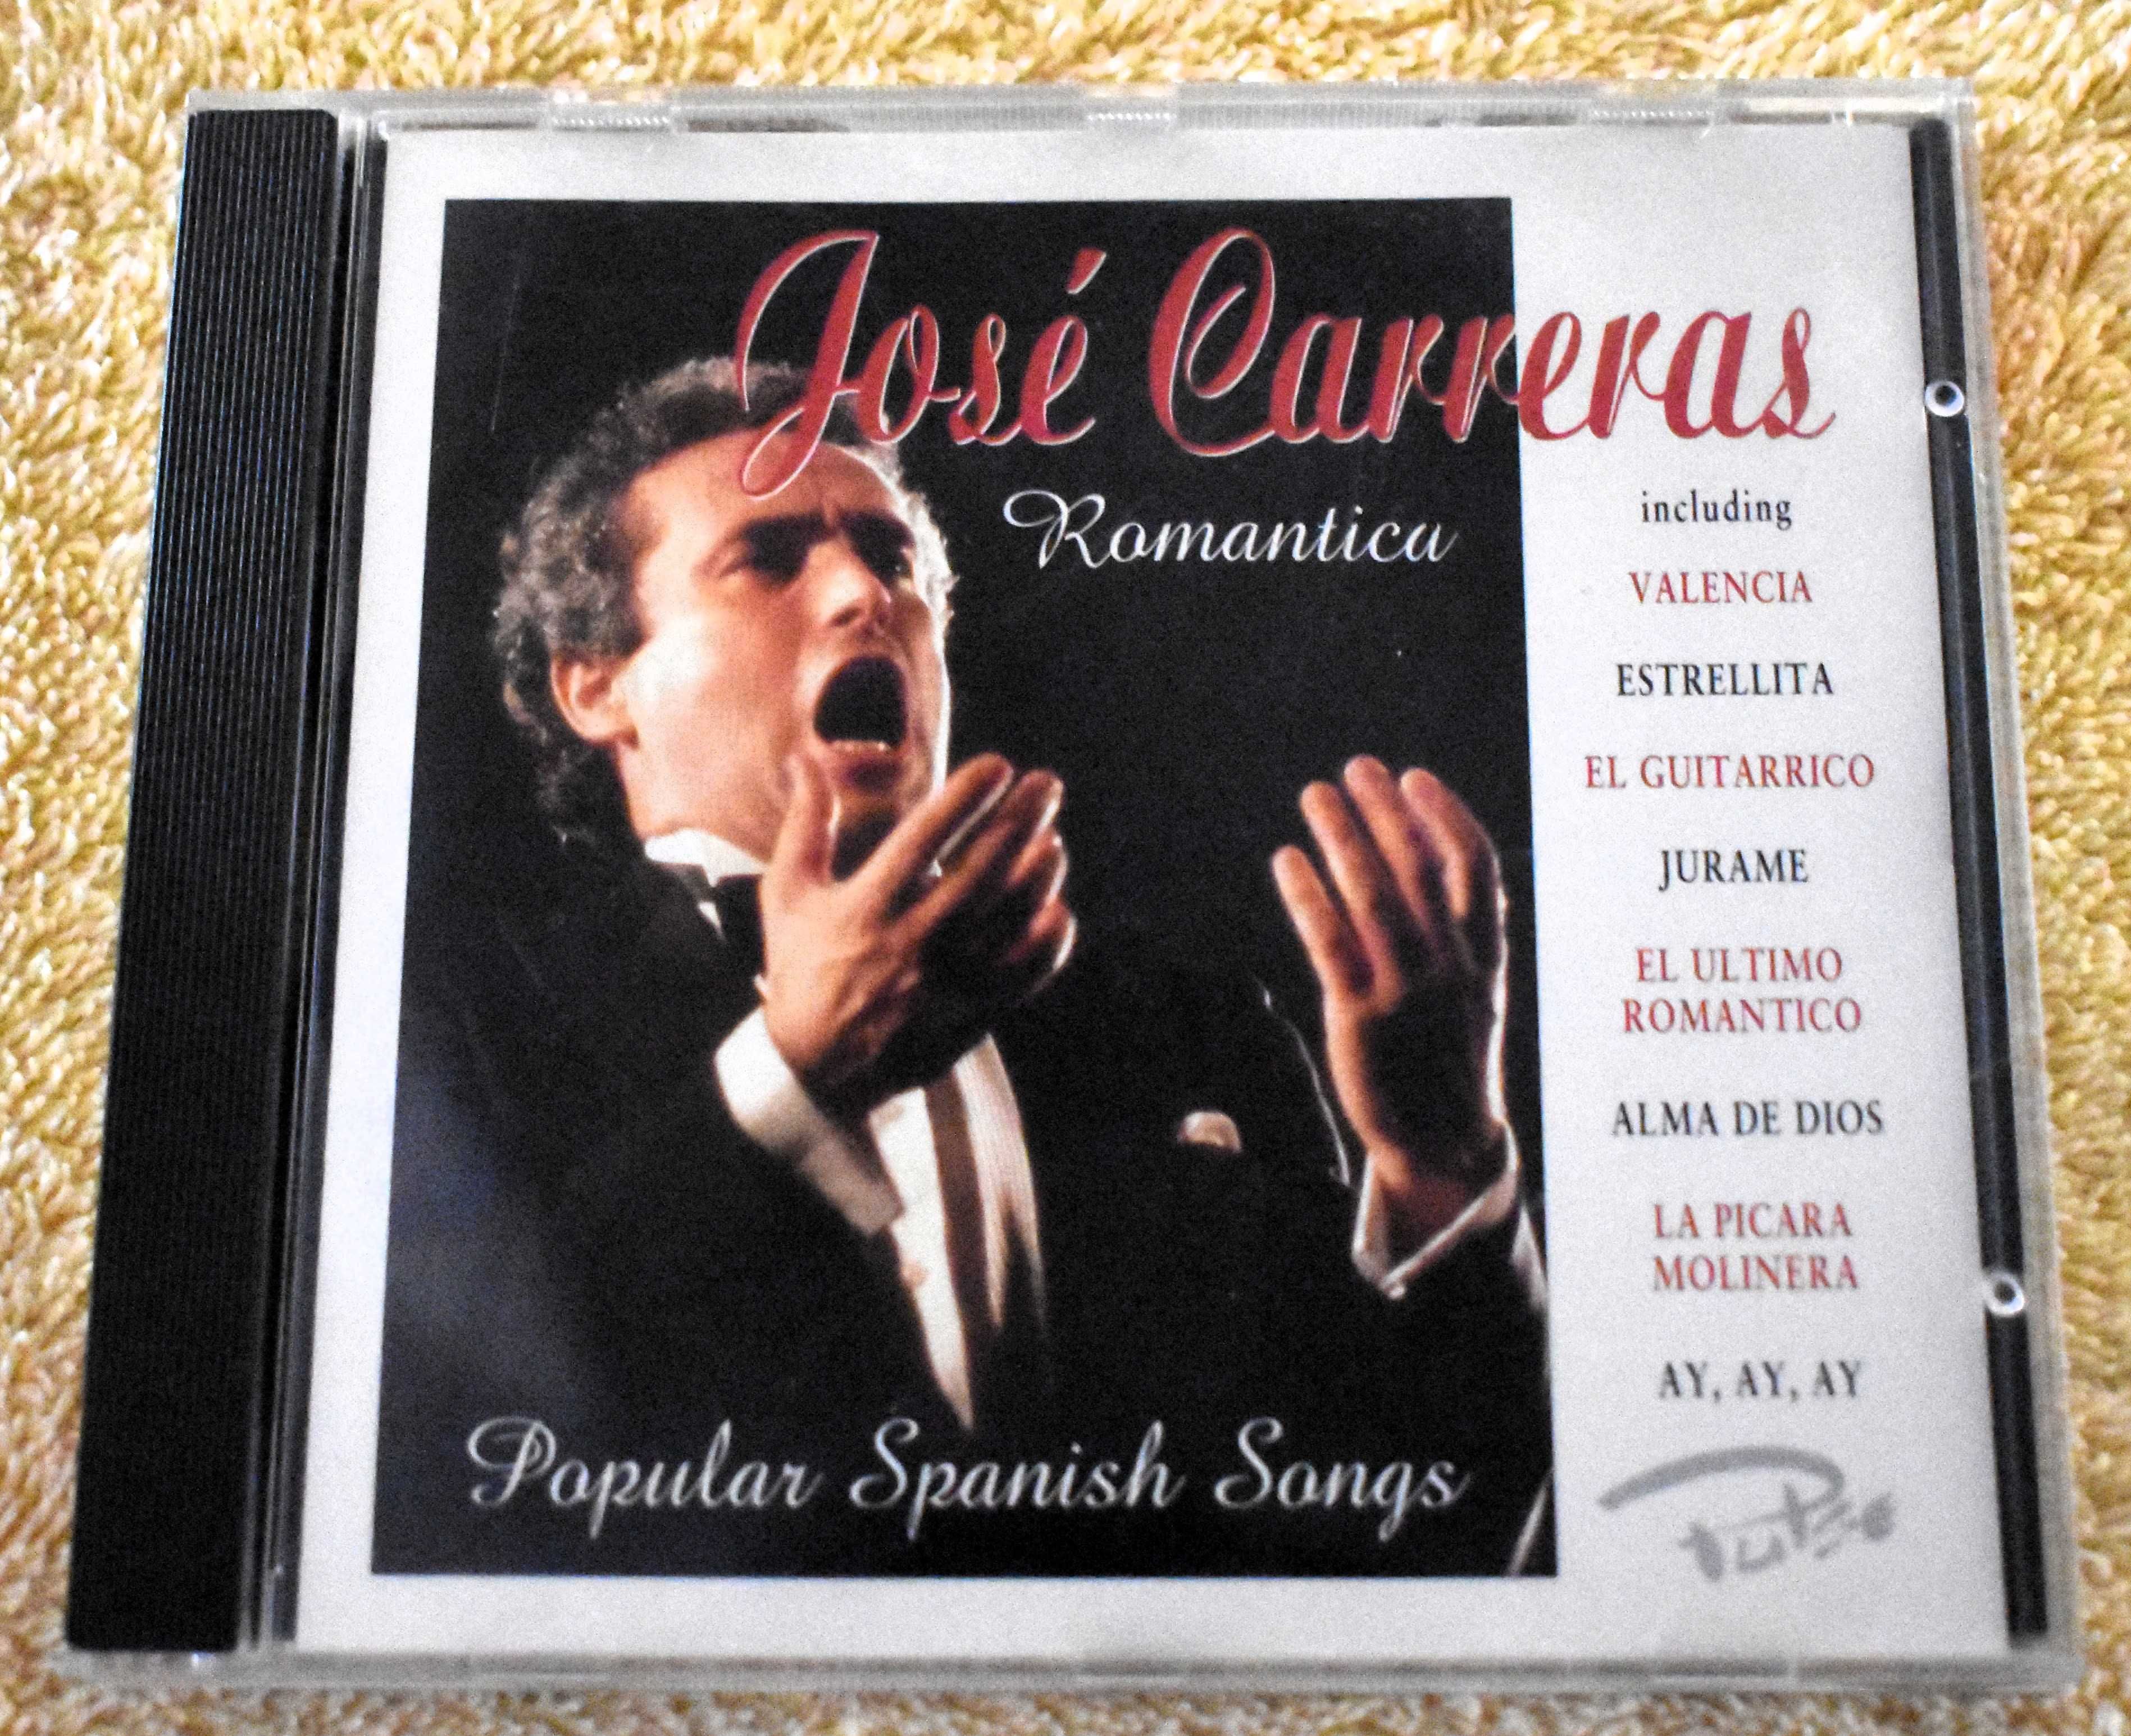 José Carreras - Romantica, Popular Spanish Songs